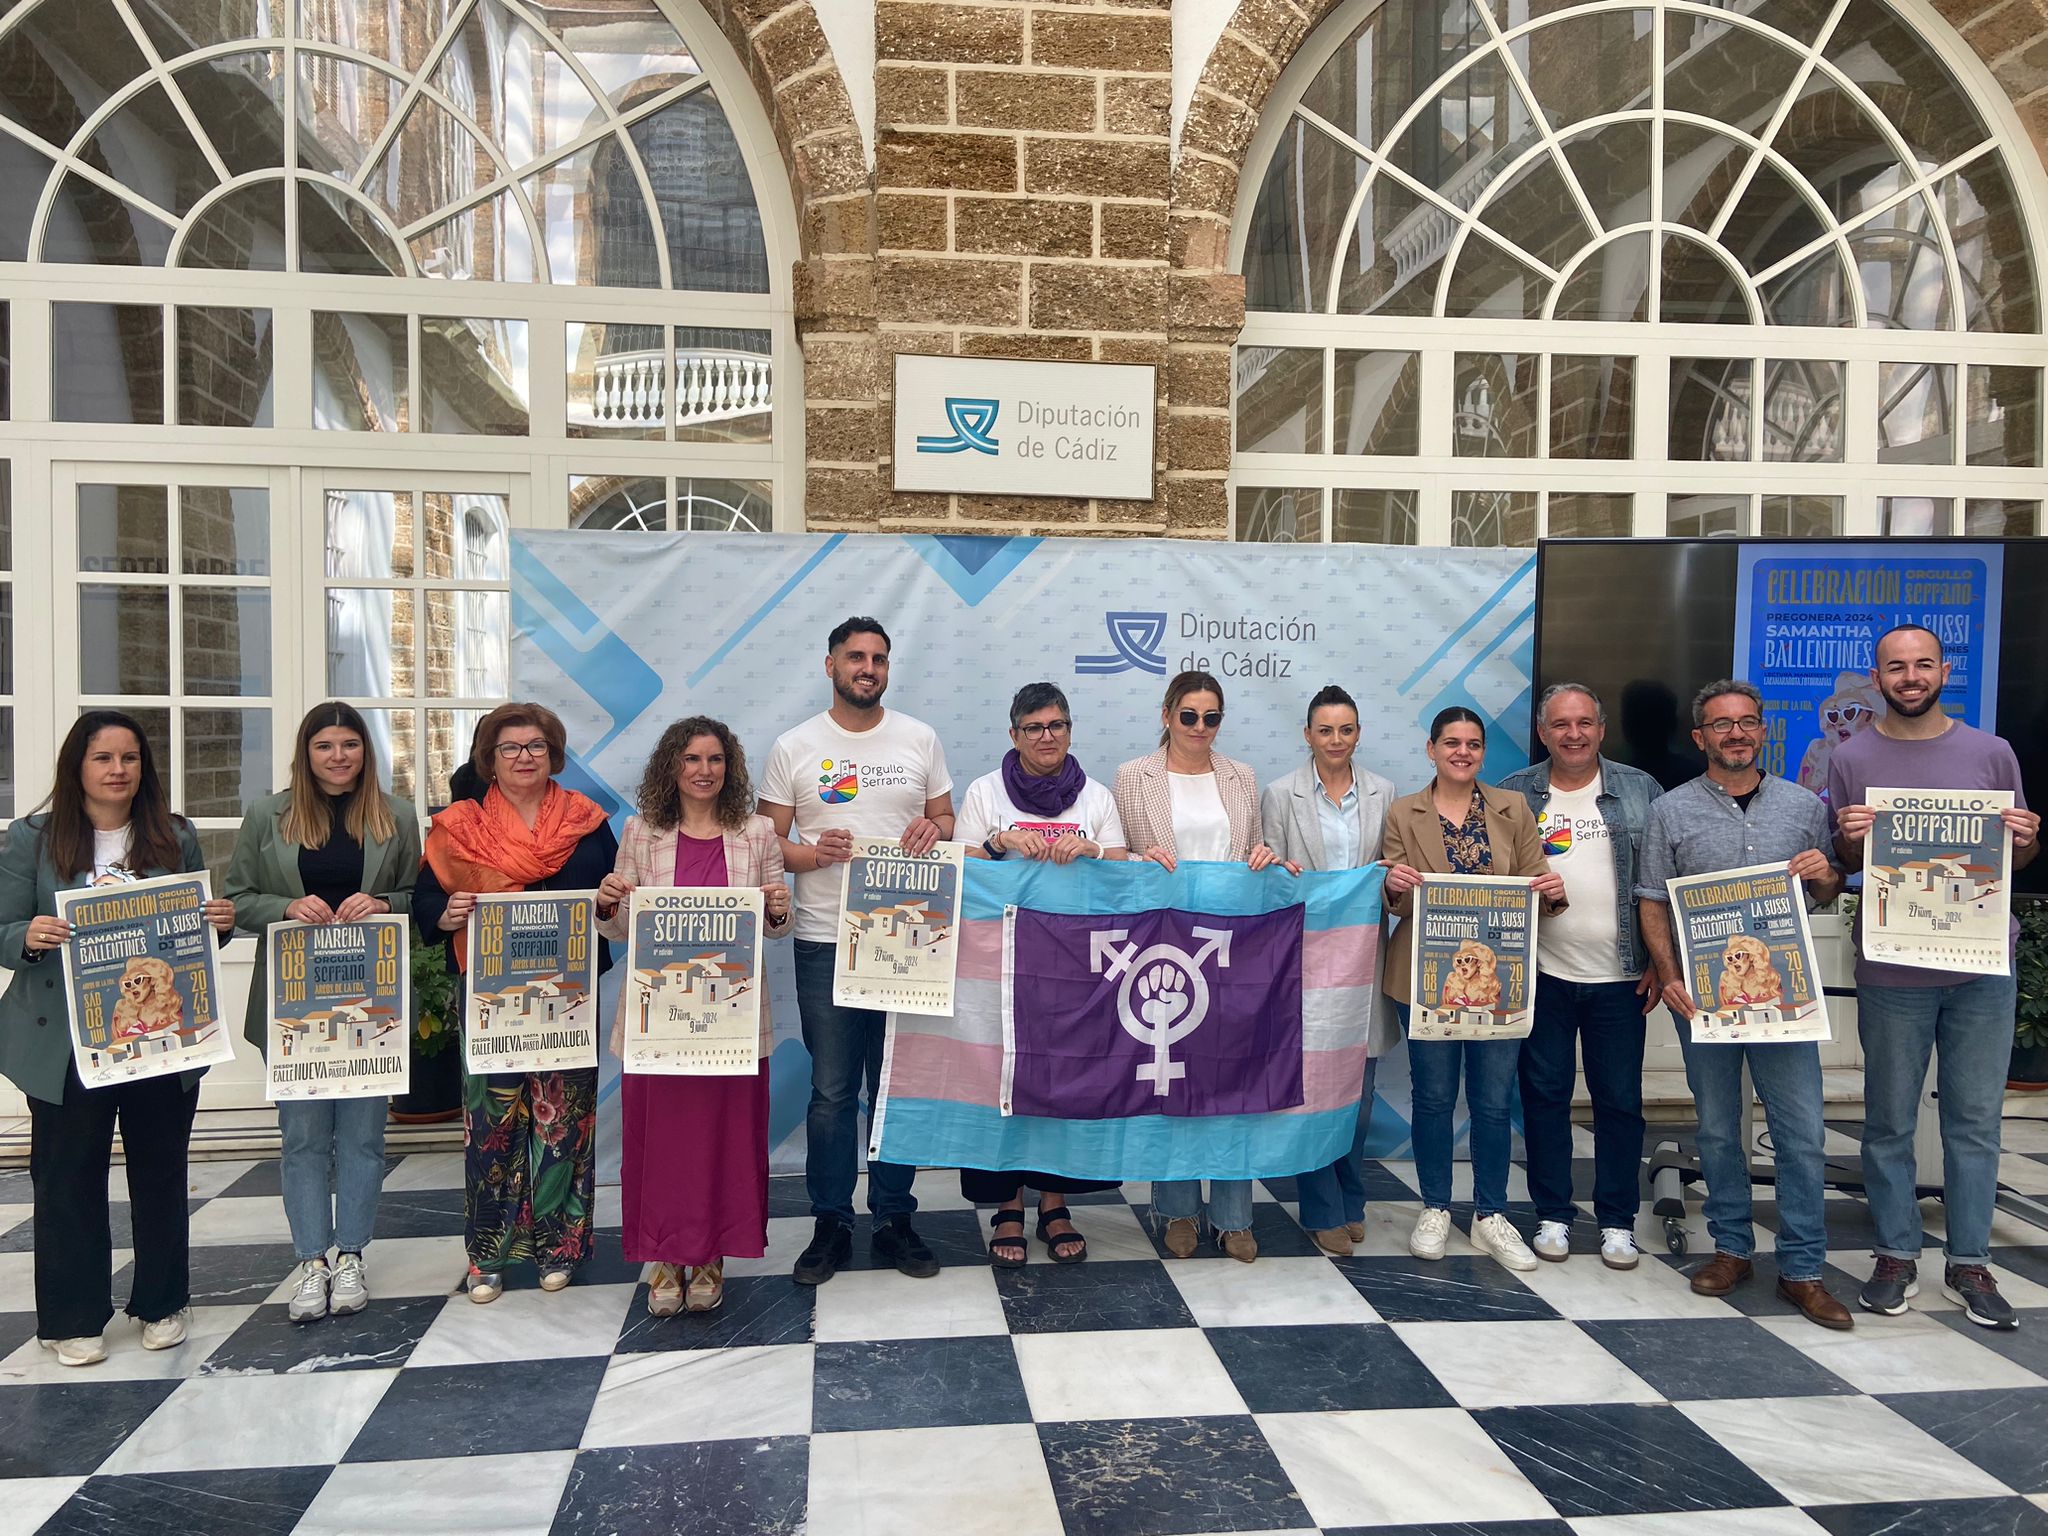 Presentación del XI Orgullo Serrano, jornadas por la dignidad y los derechos de las personas LGTBIQ en la Sierra de Cádiz.